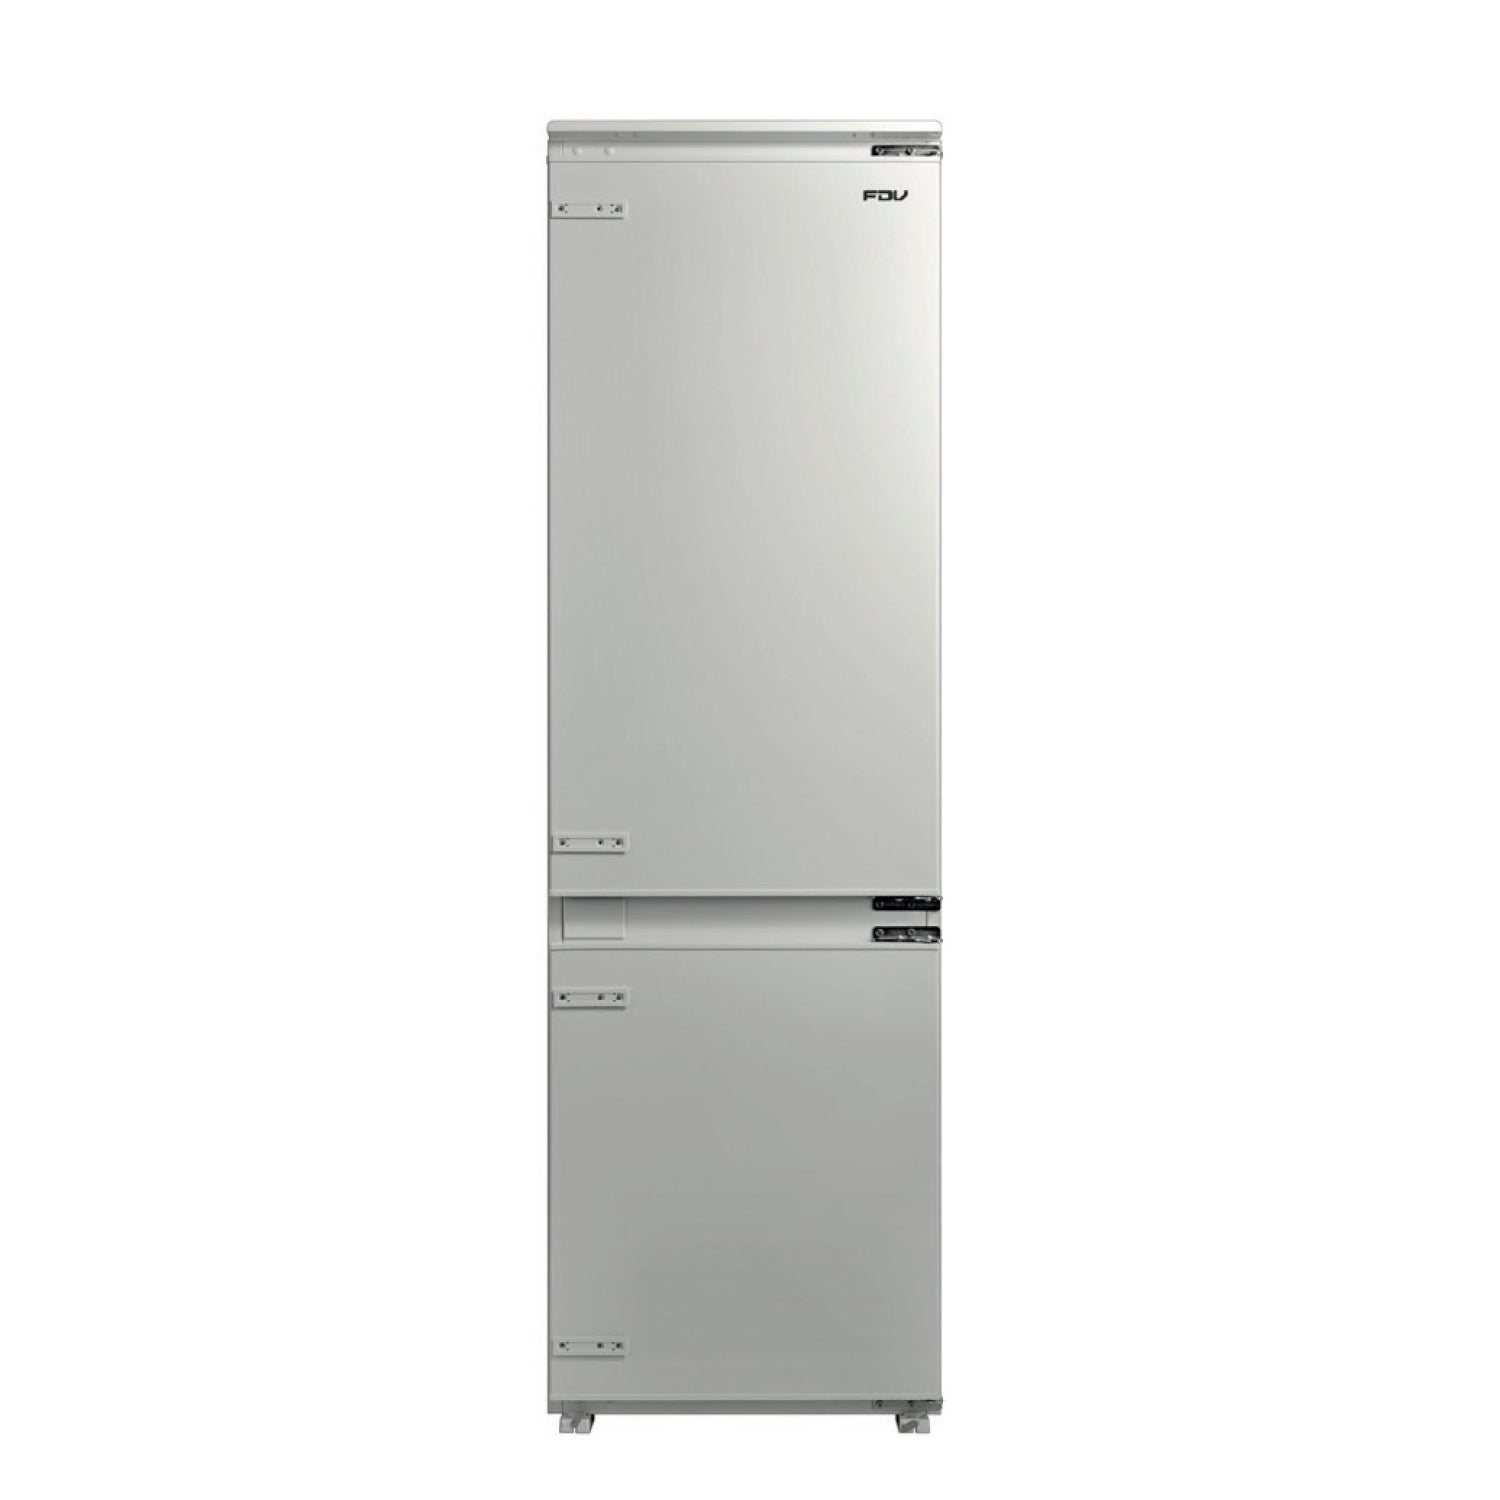 Smart built-in refrigerator